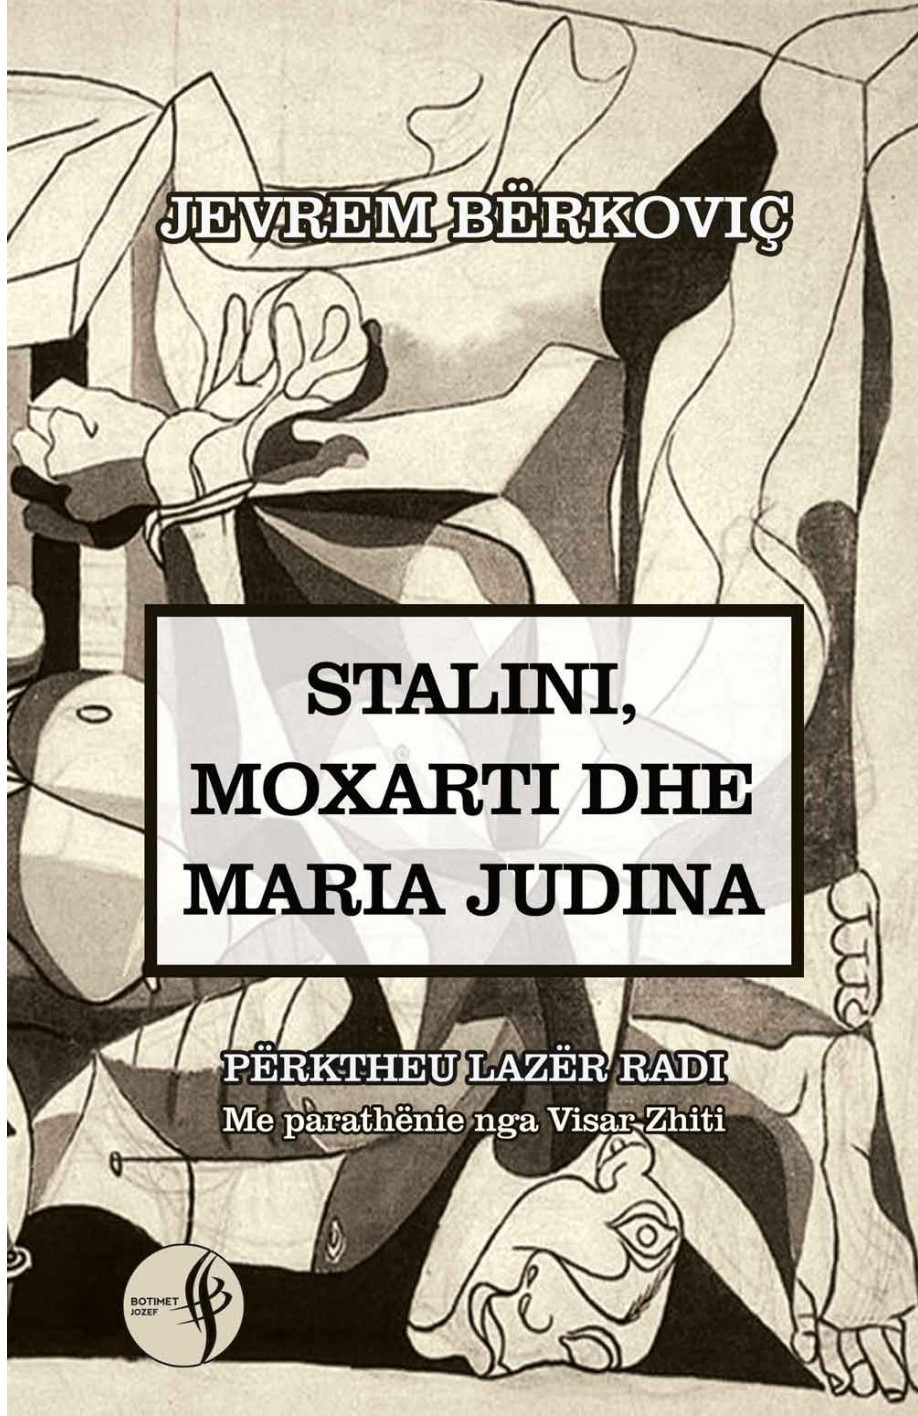 Stalini, Moxarti dhe Maria Judina